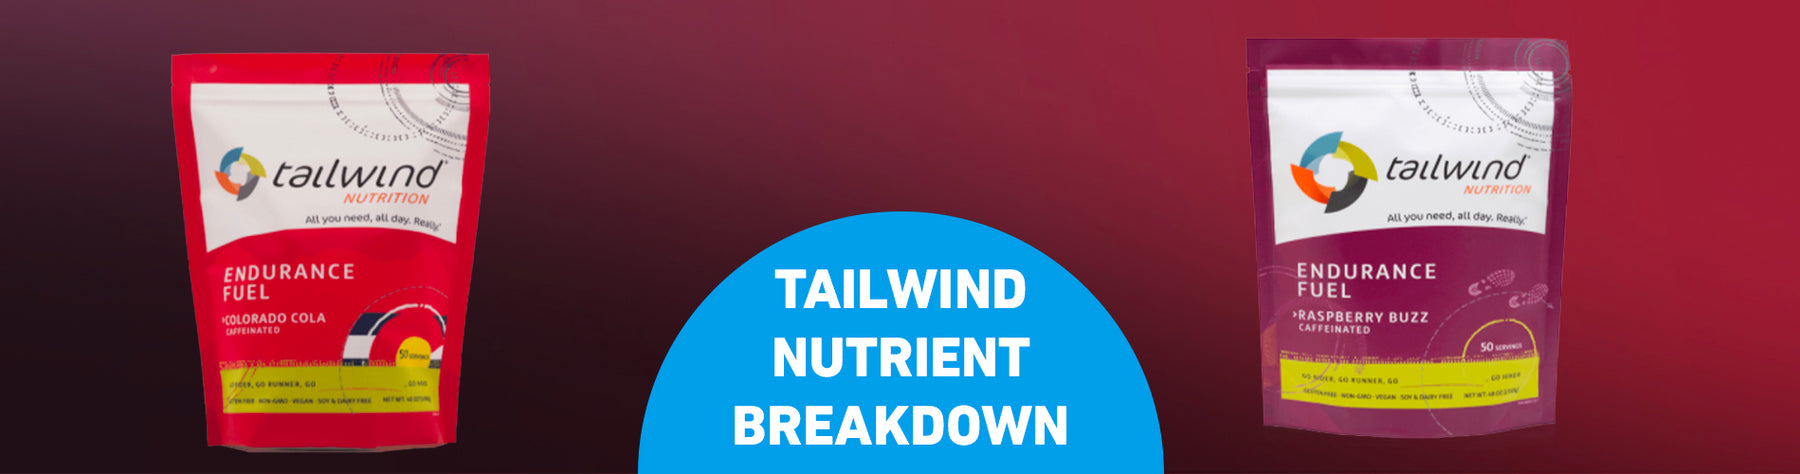 Tailwind Nutrition - Nutrient Breakdown